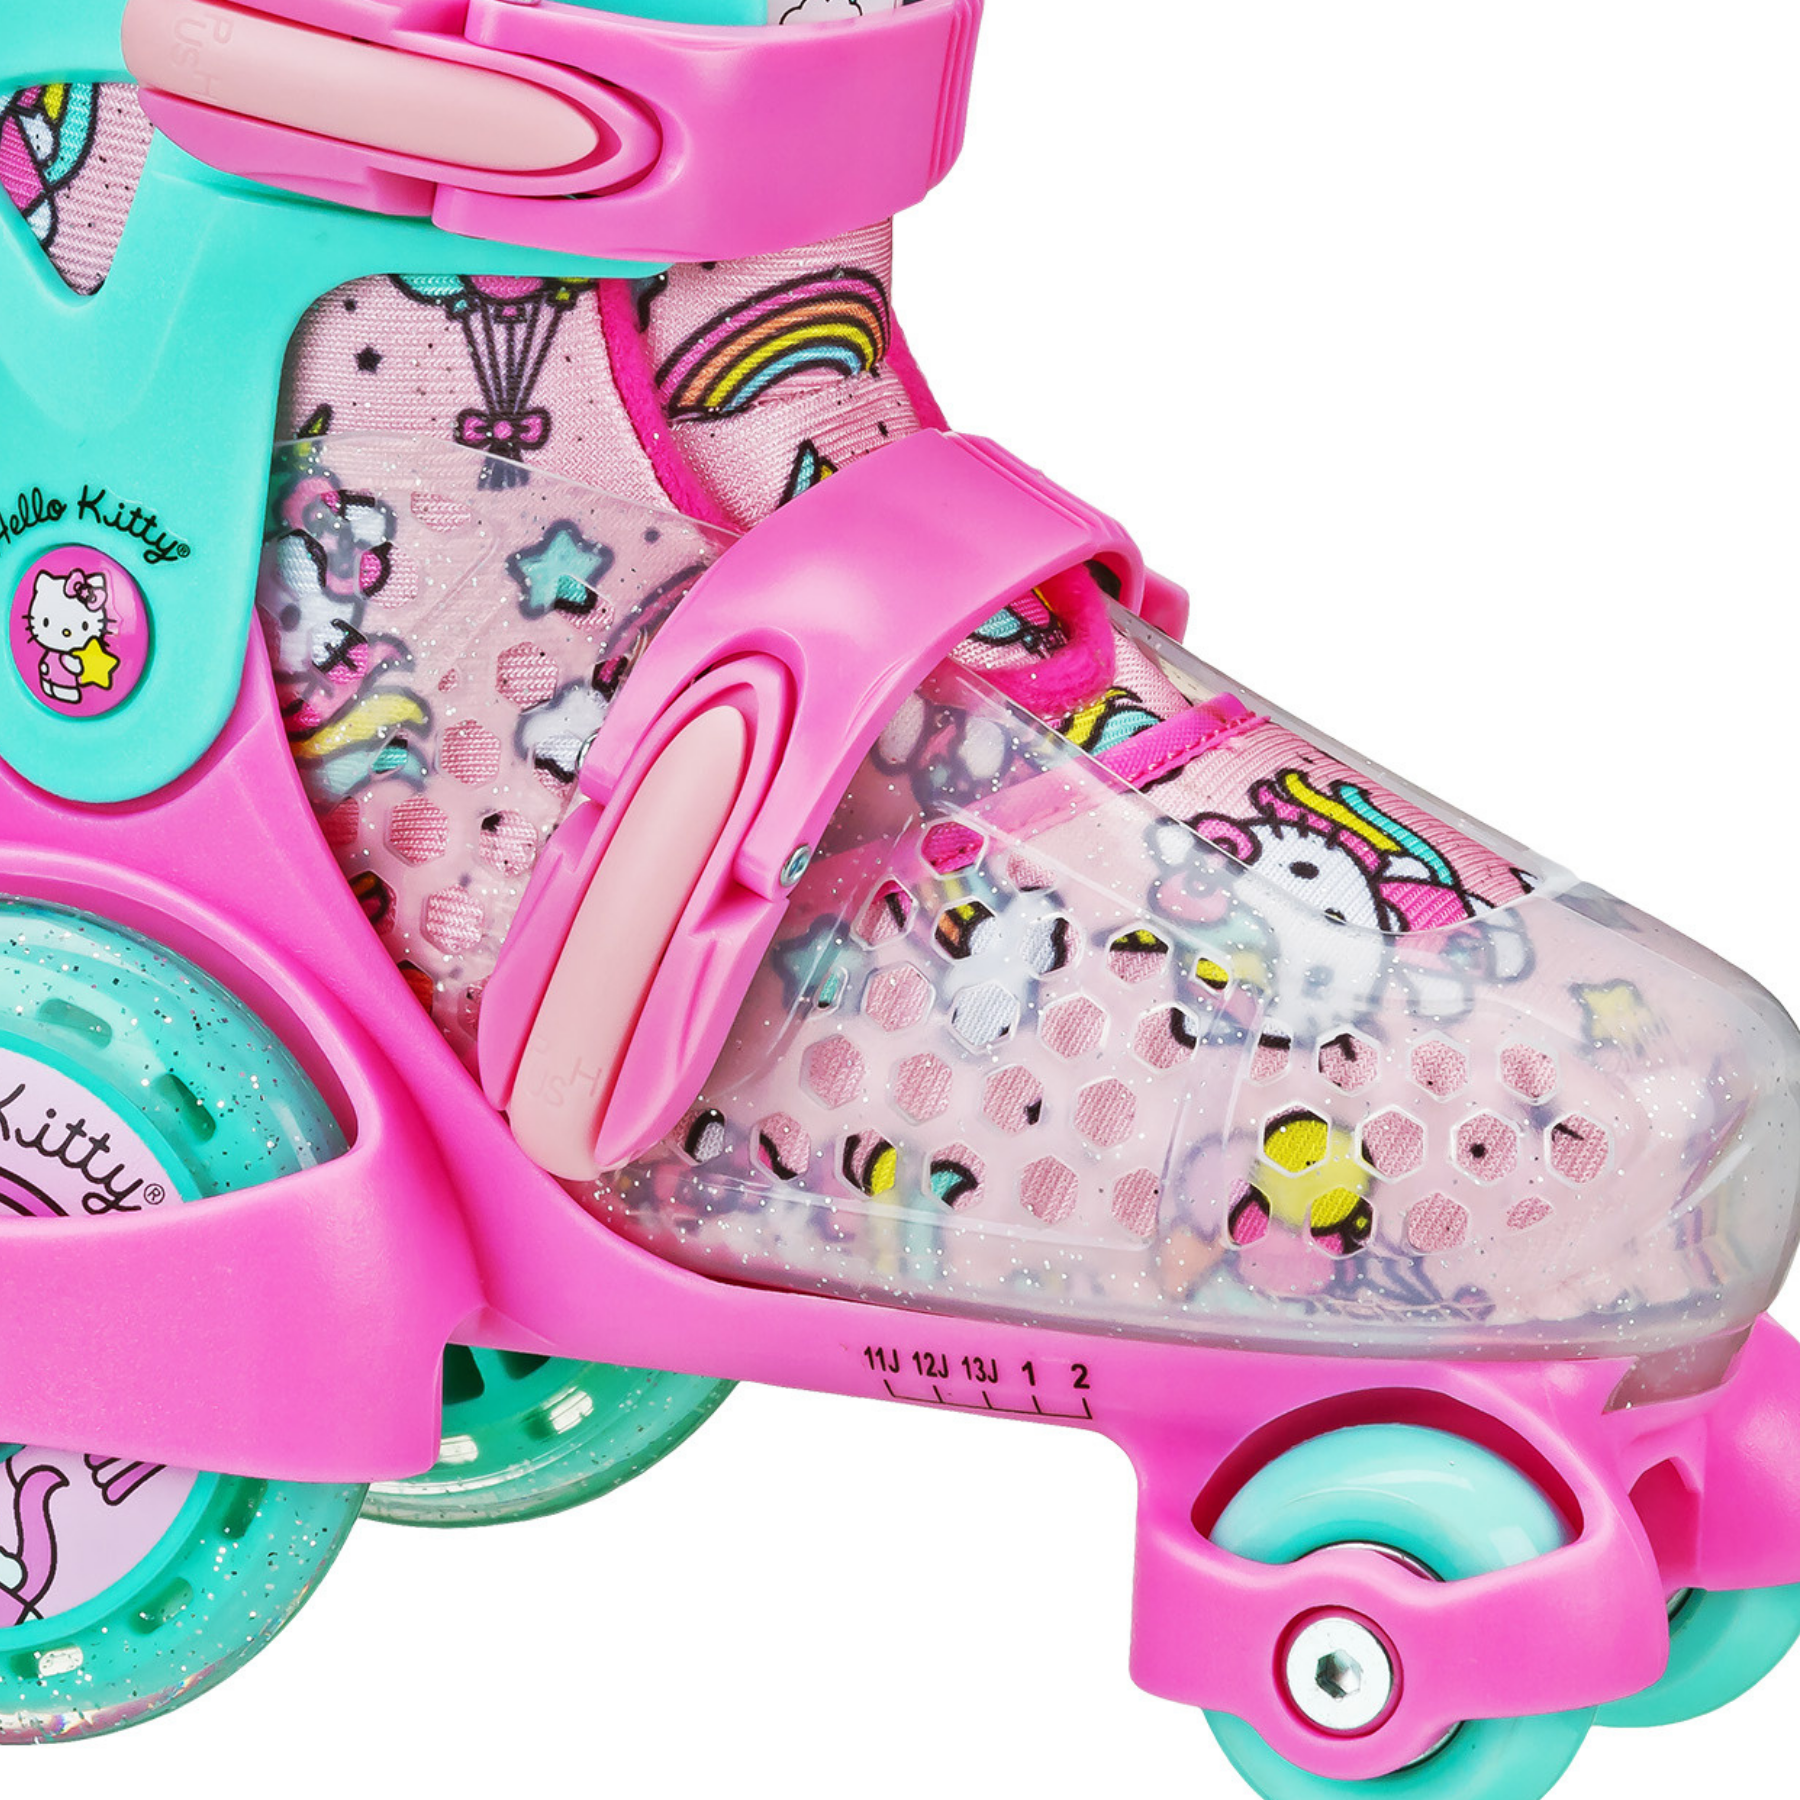 Roller Skates for Girls Boys and Kids 3 Size Adjustable Toddler~Roller Skates # 